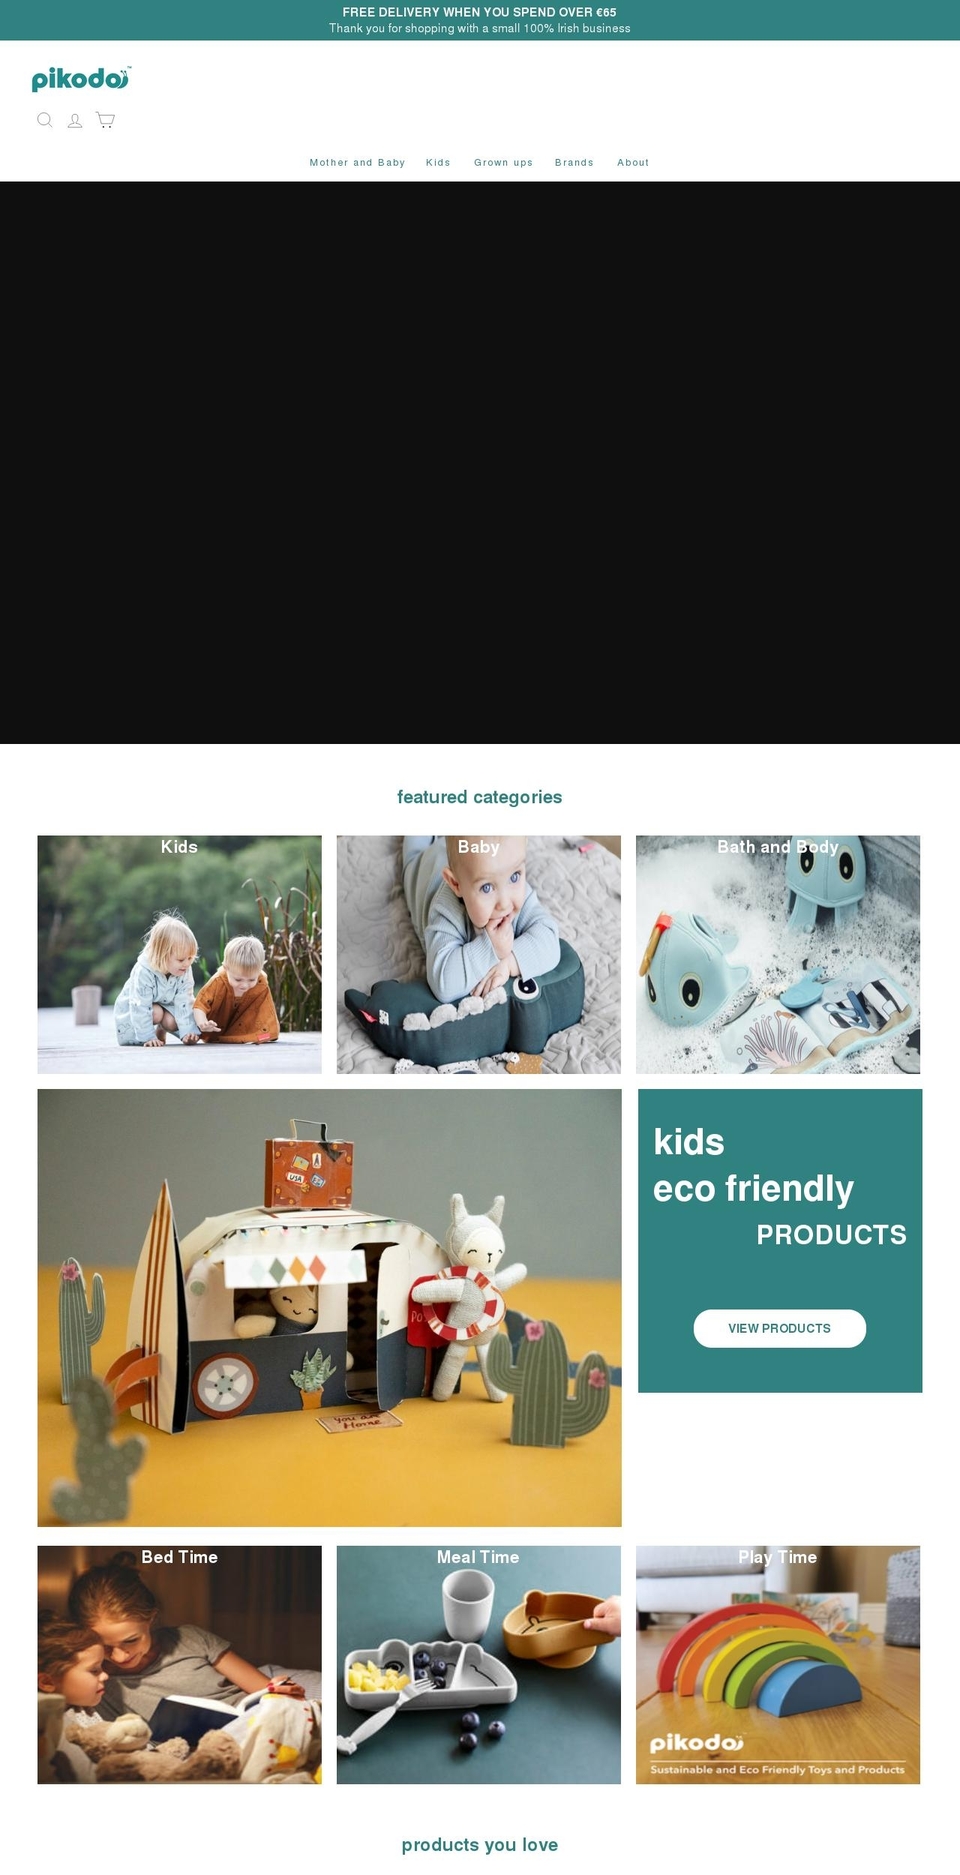 pikodo.com shopify website screenshot